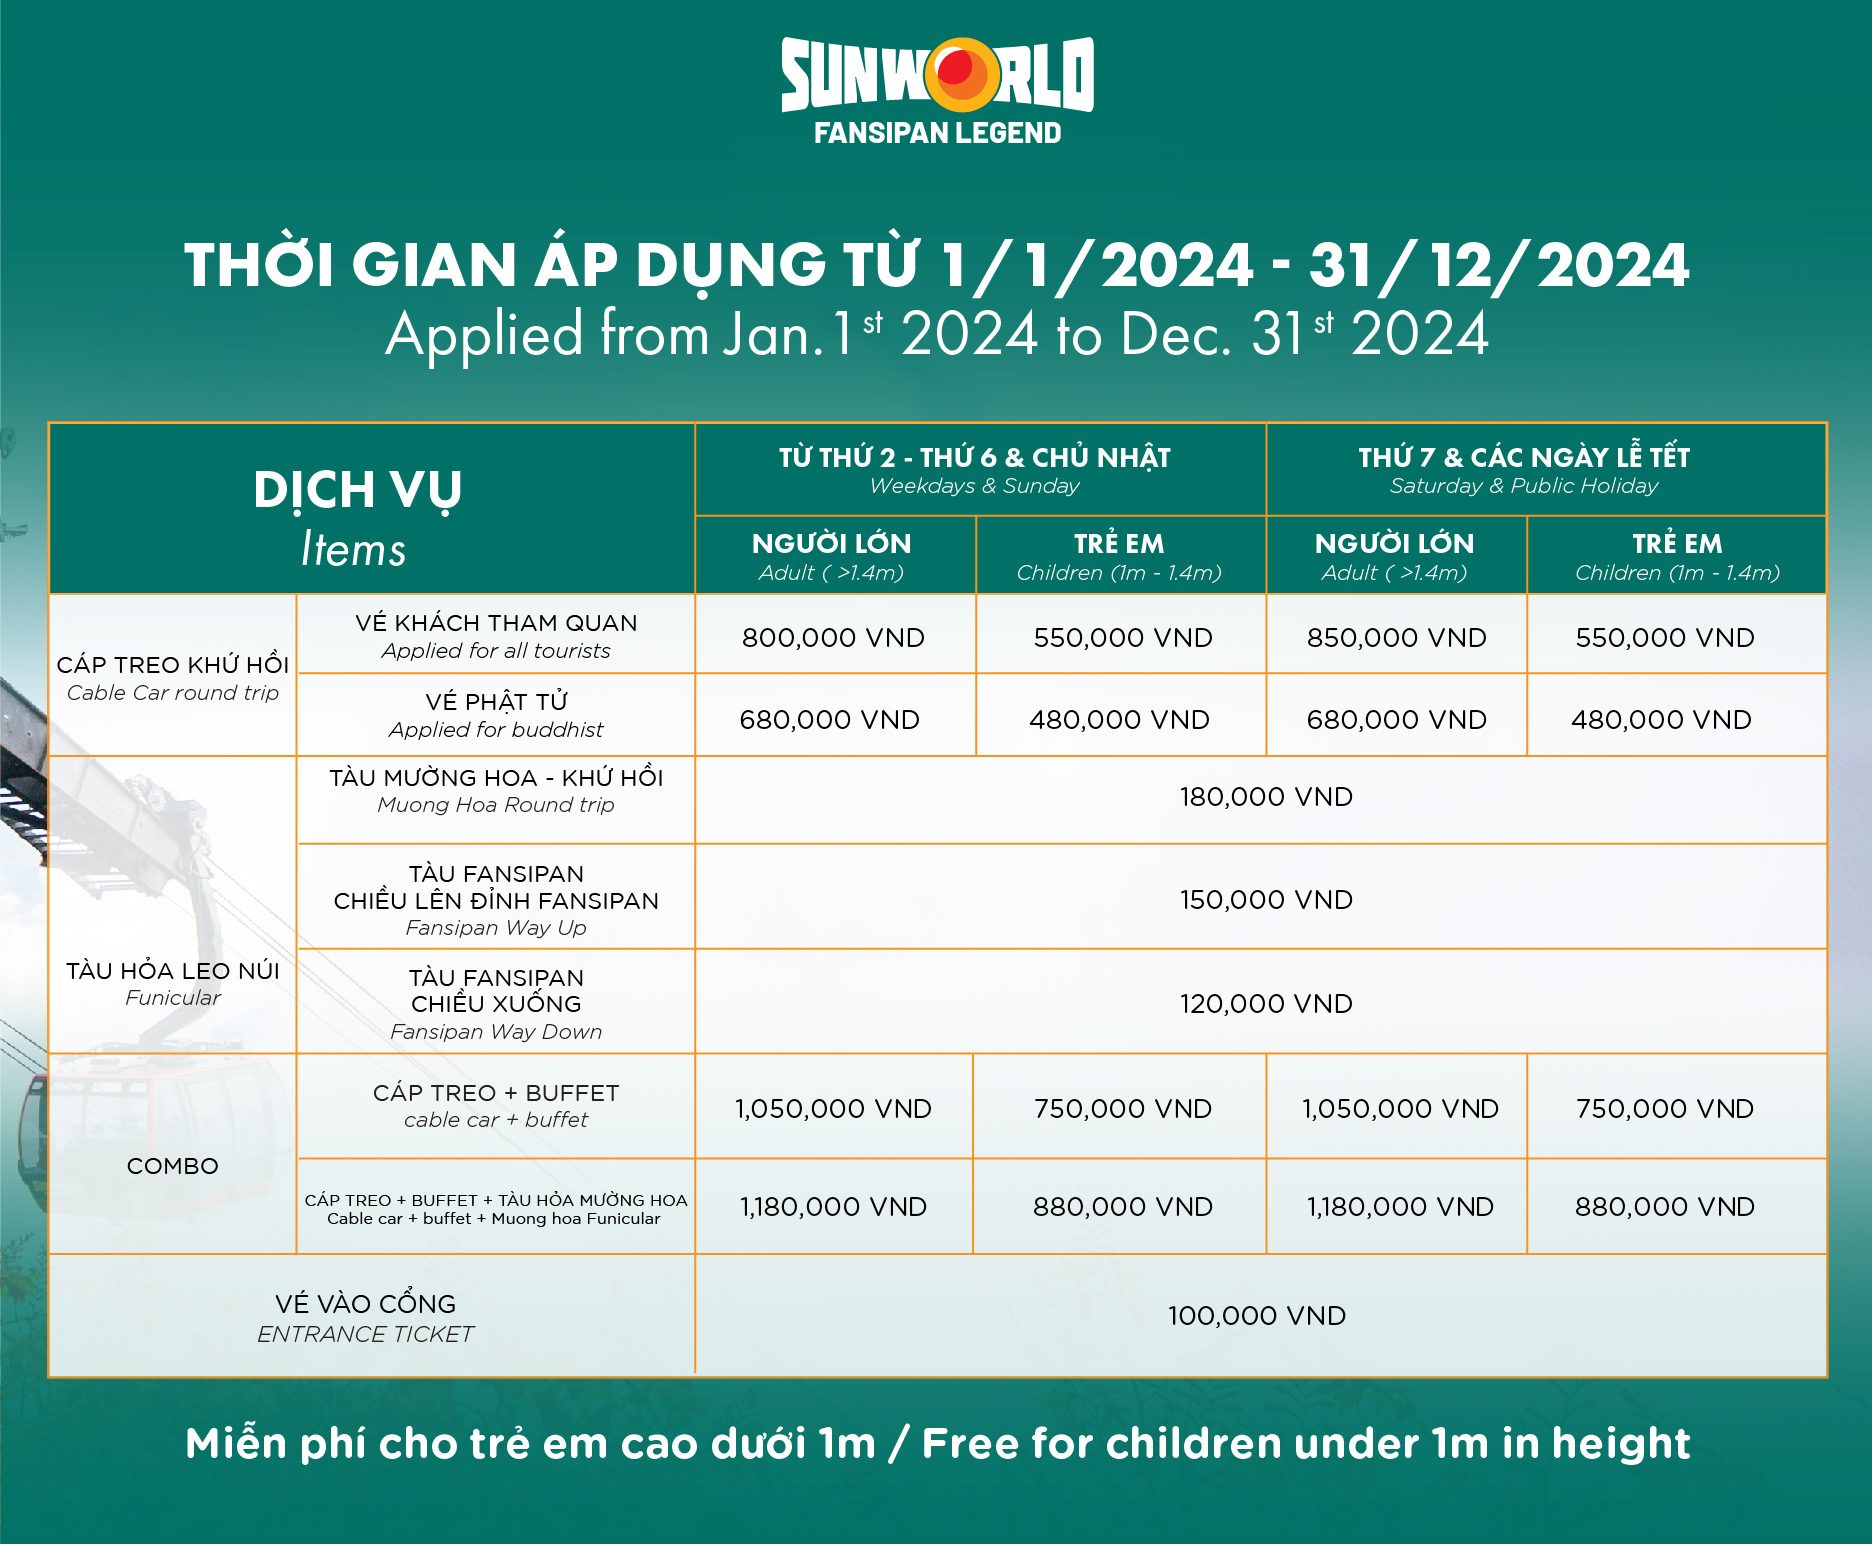 Giá vé 2024 tại SunWorld Fansipan Legend (Áp dụng từ 01/01/2024 – 31/12/2024 cho đến khi có thông báo mới)